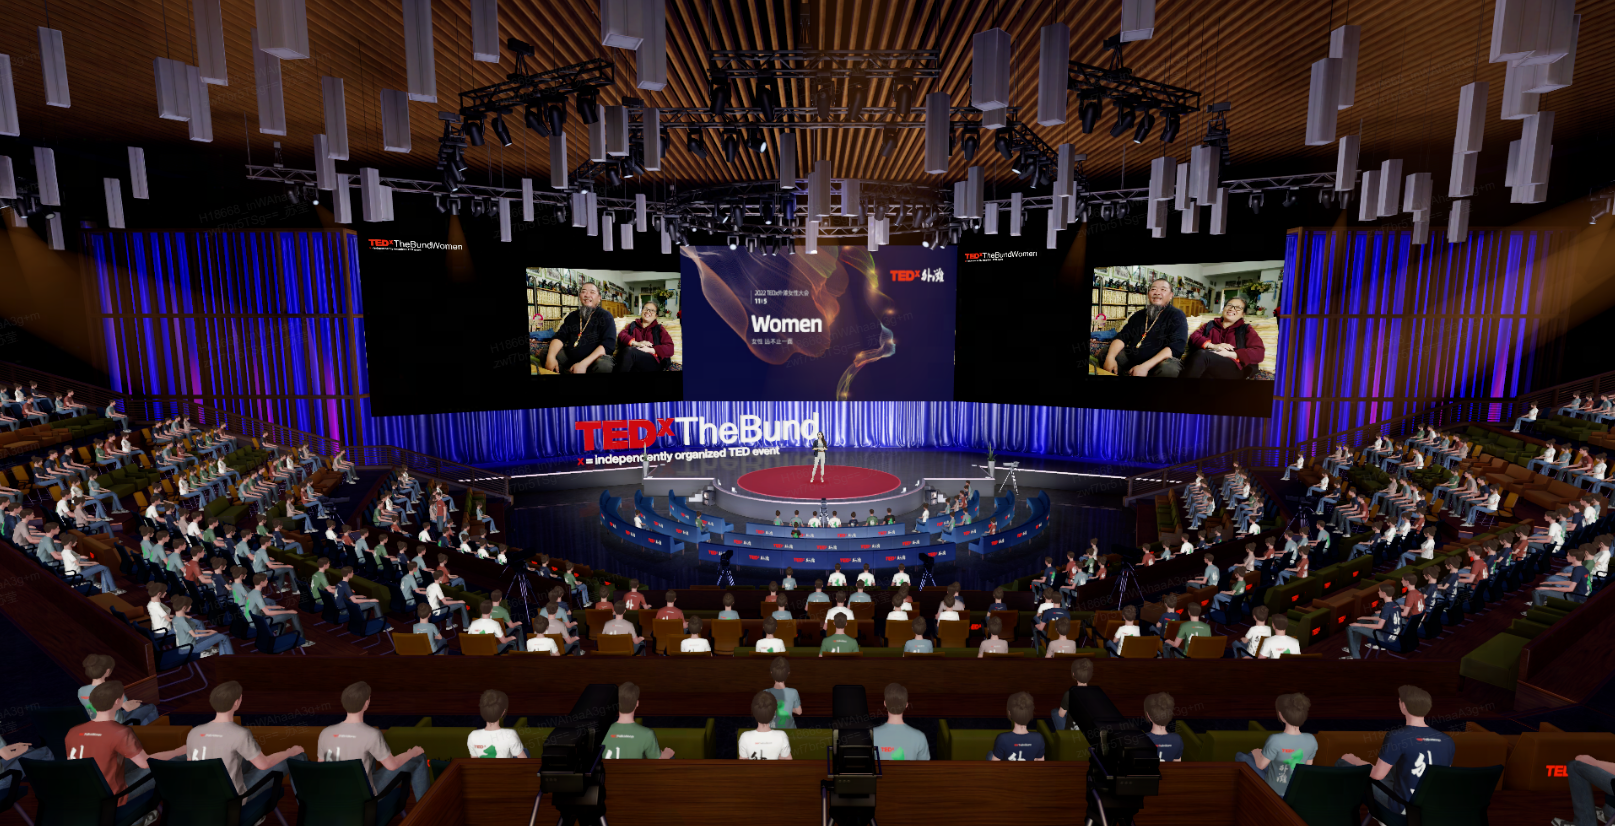 这是一张TEDx活动的图片，观众聚焦于演讲者，场地布置现代，屏幕显示“Women”字样，氛围正式而专注。